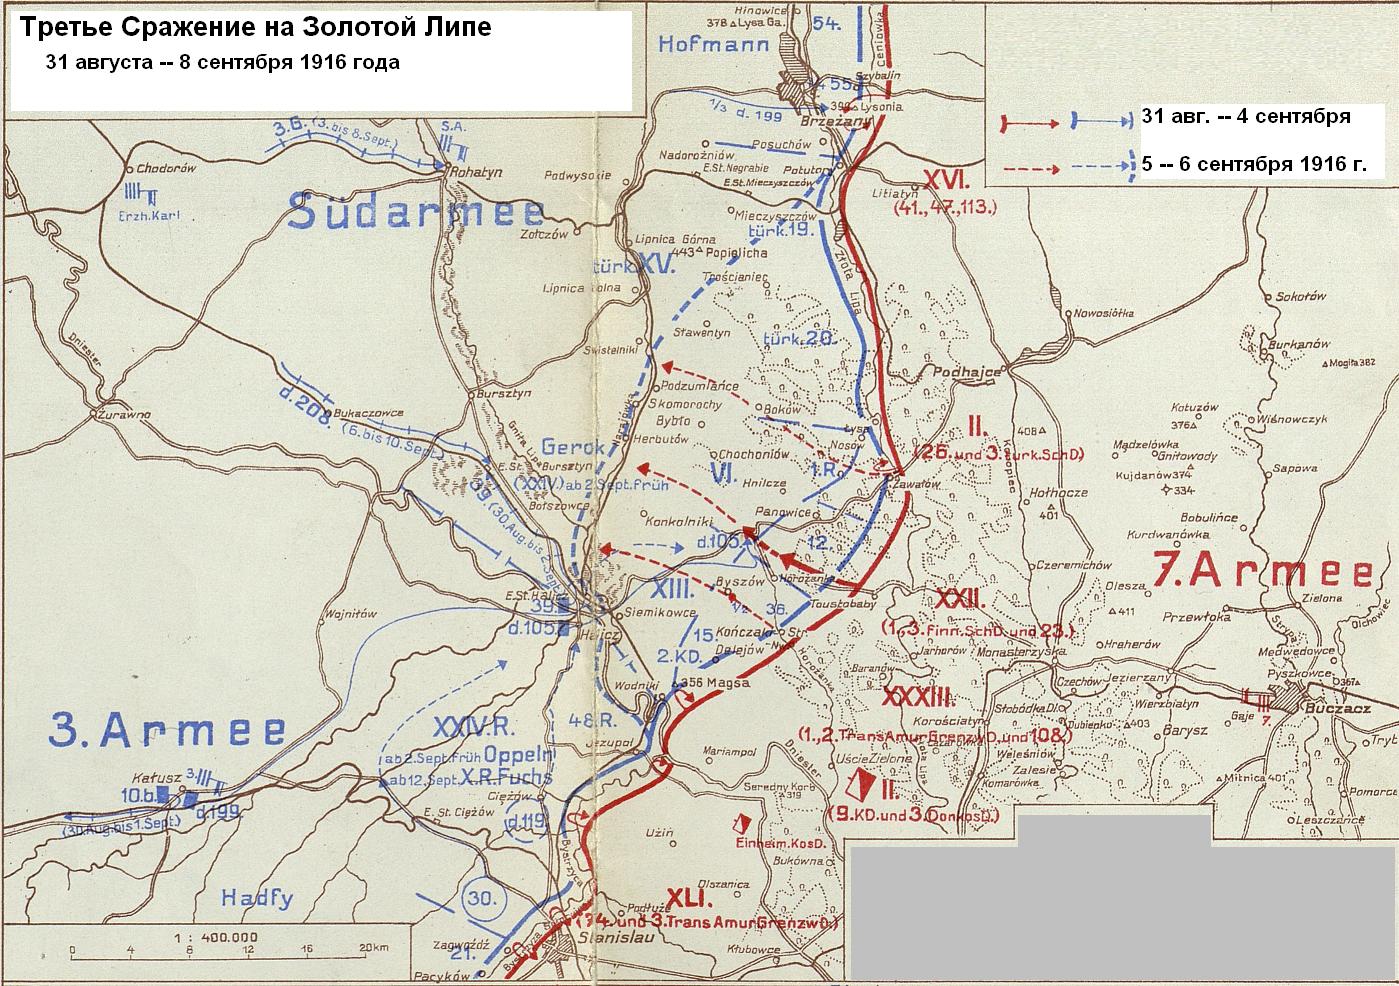 Схема 3-го сражения на Золотой Липе с 31 августа по 8 сентября 1916 года